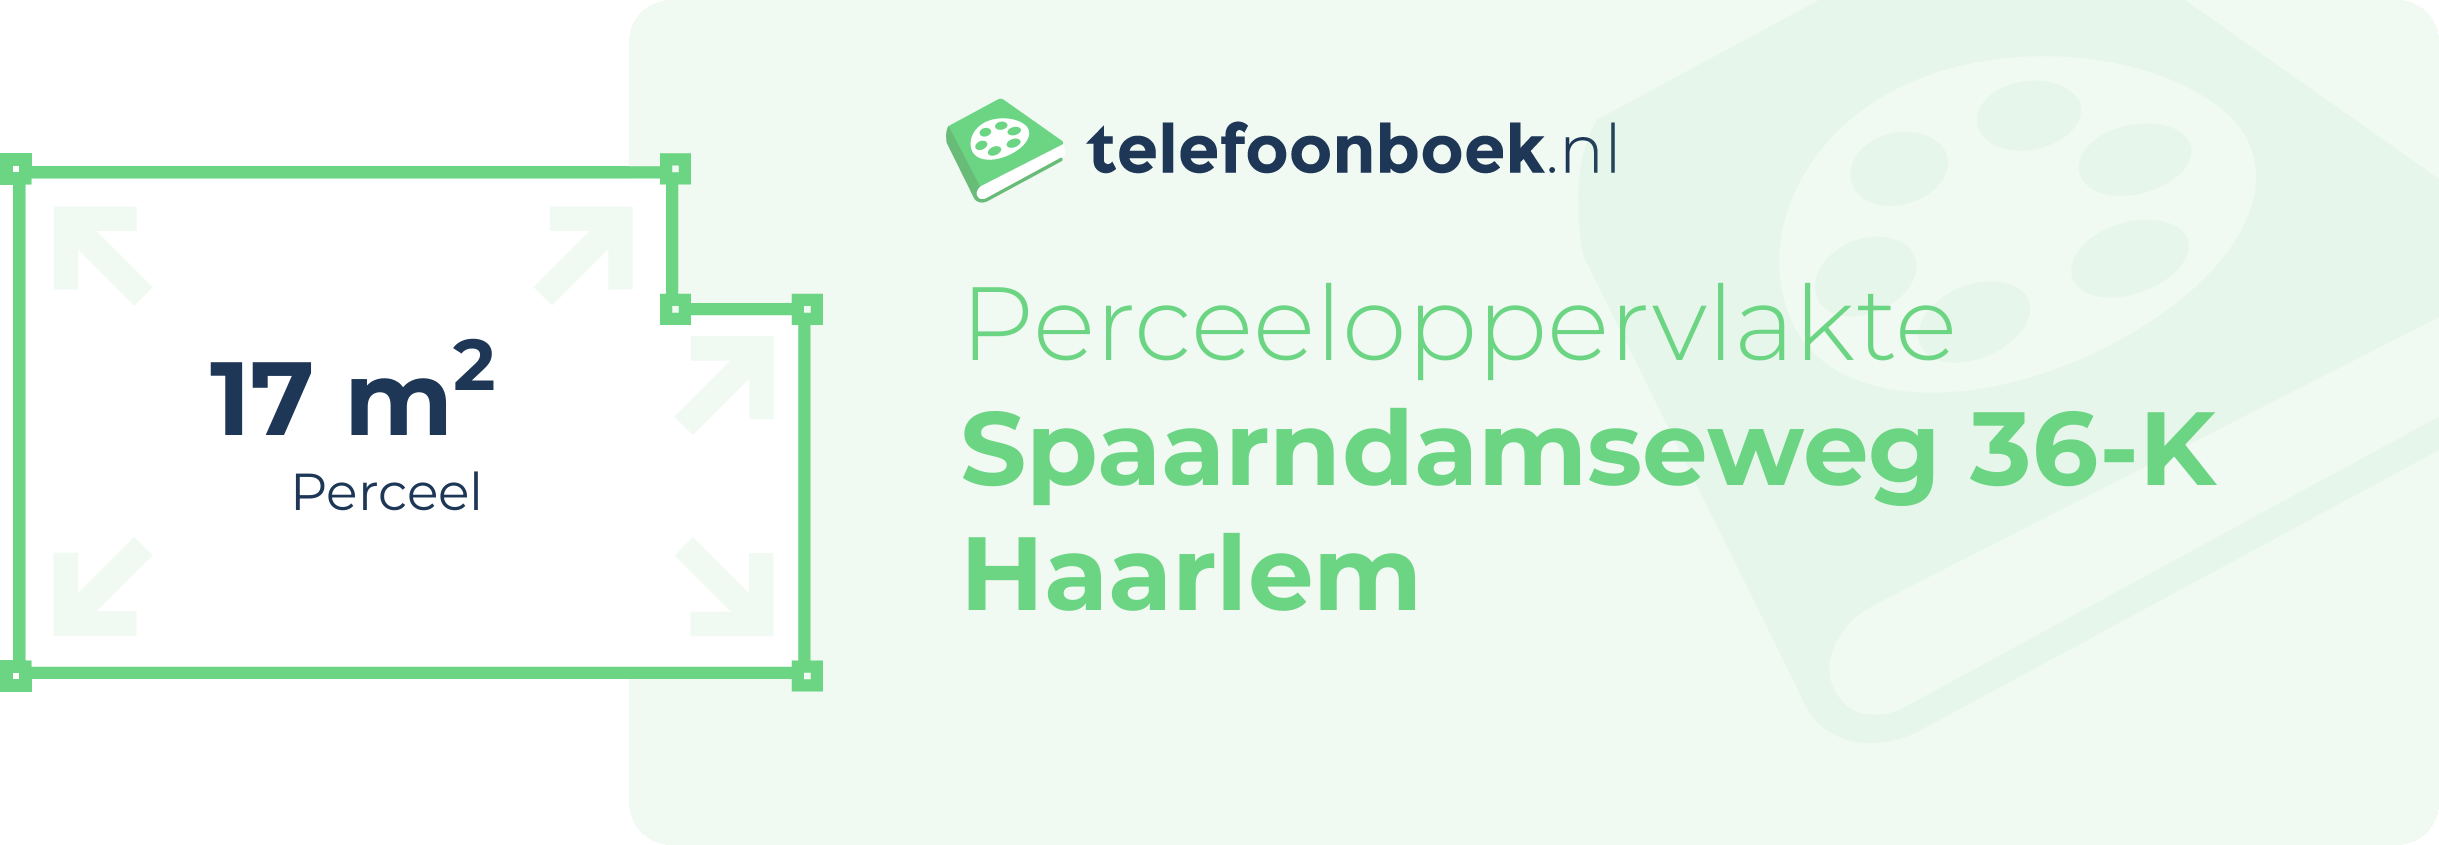 Perceeloppervlakte Spaarndamseweg 36-K Haarlem